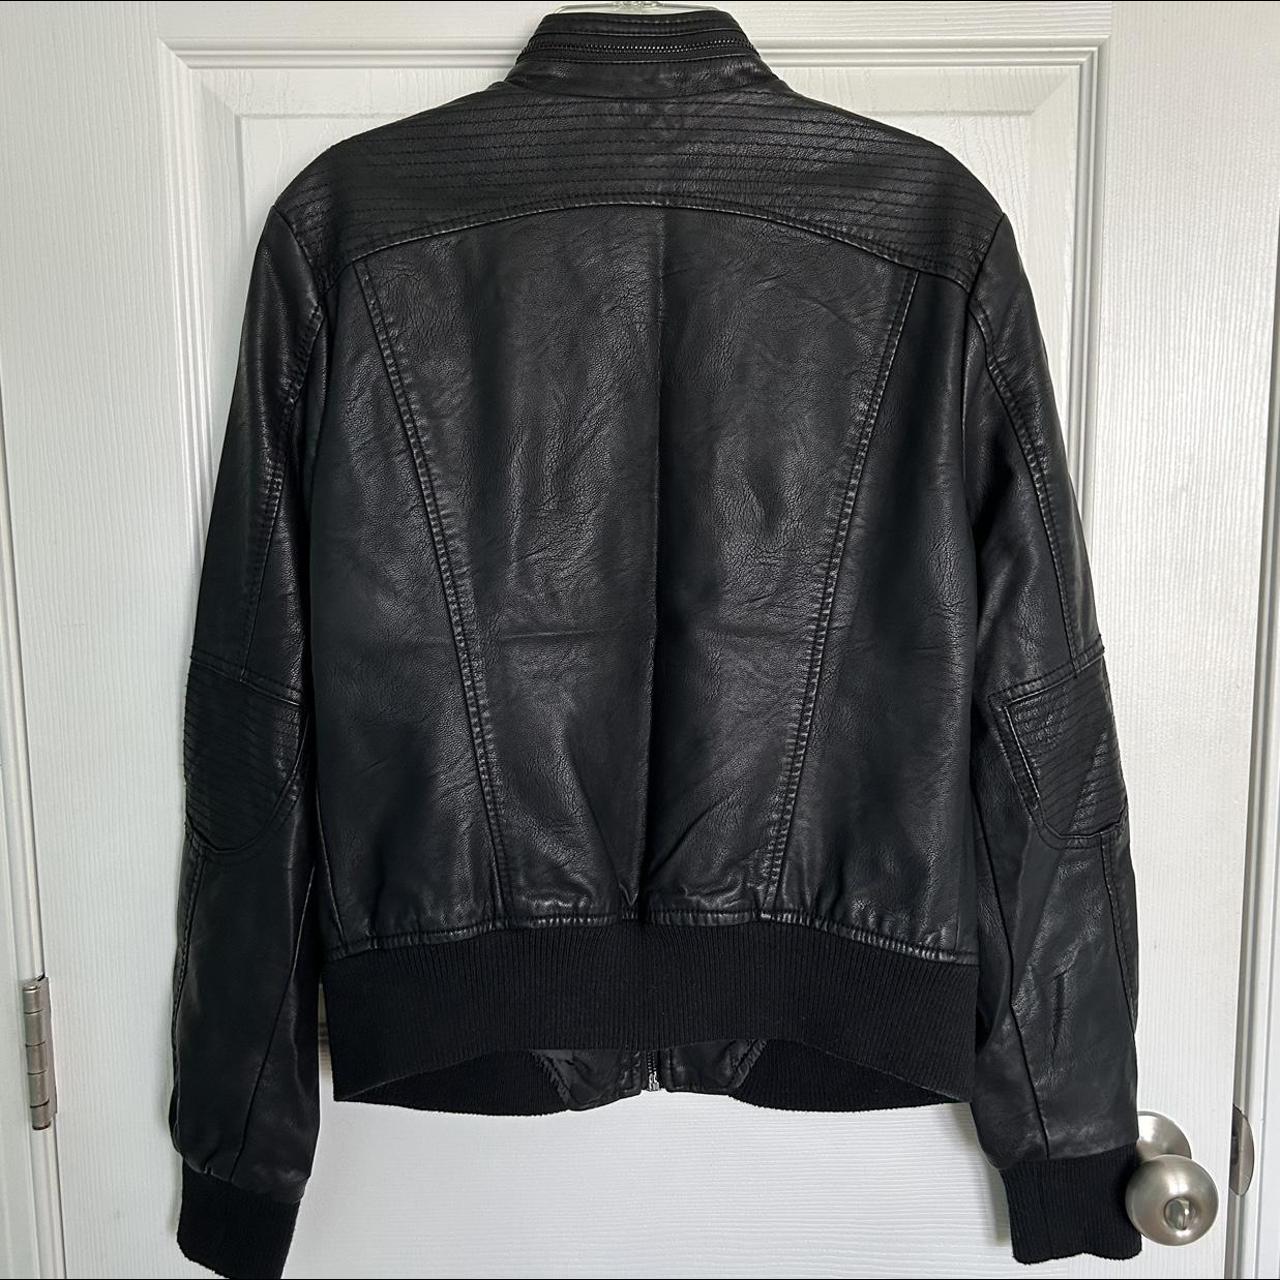 *black vegan leather jacket 🖤 *two side pockets and... - Depop